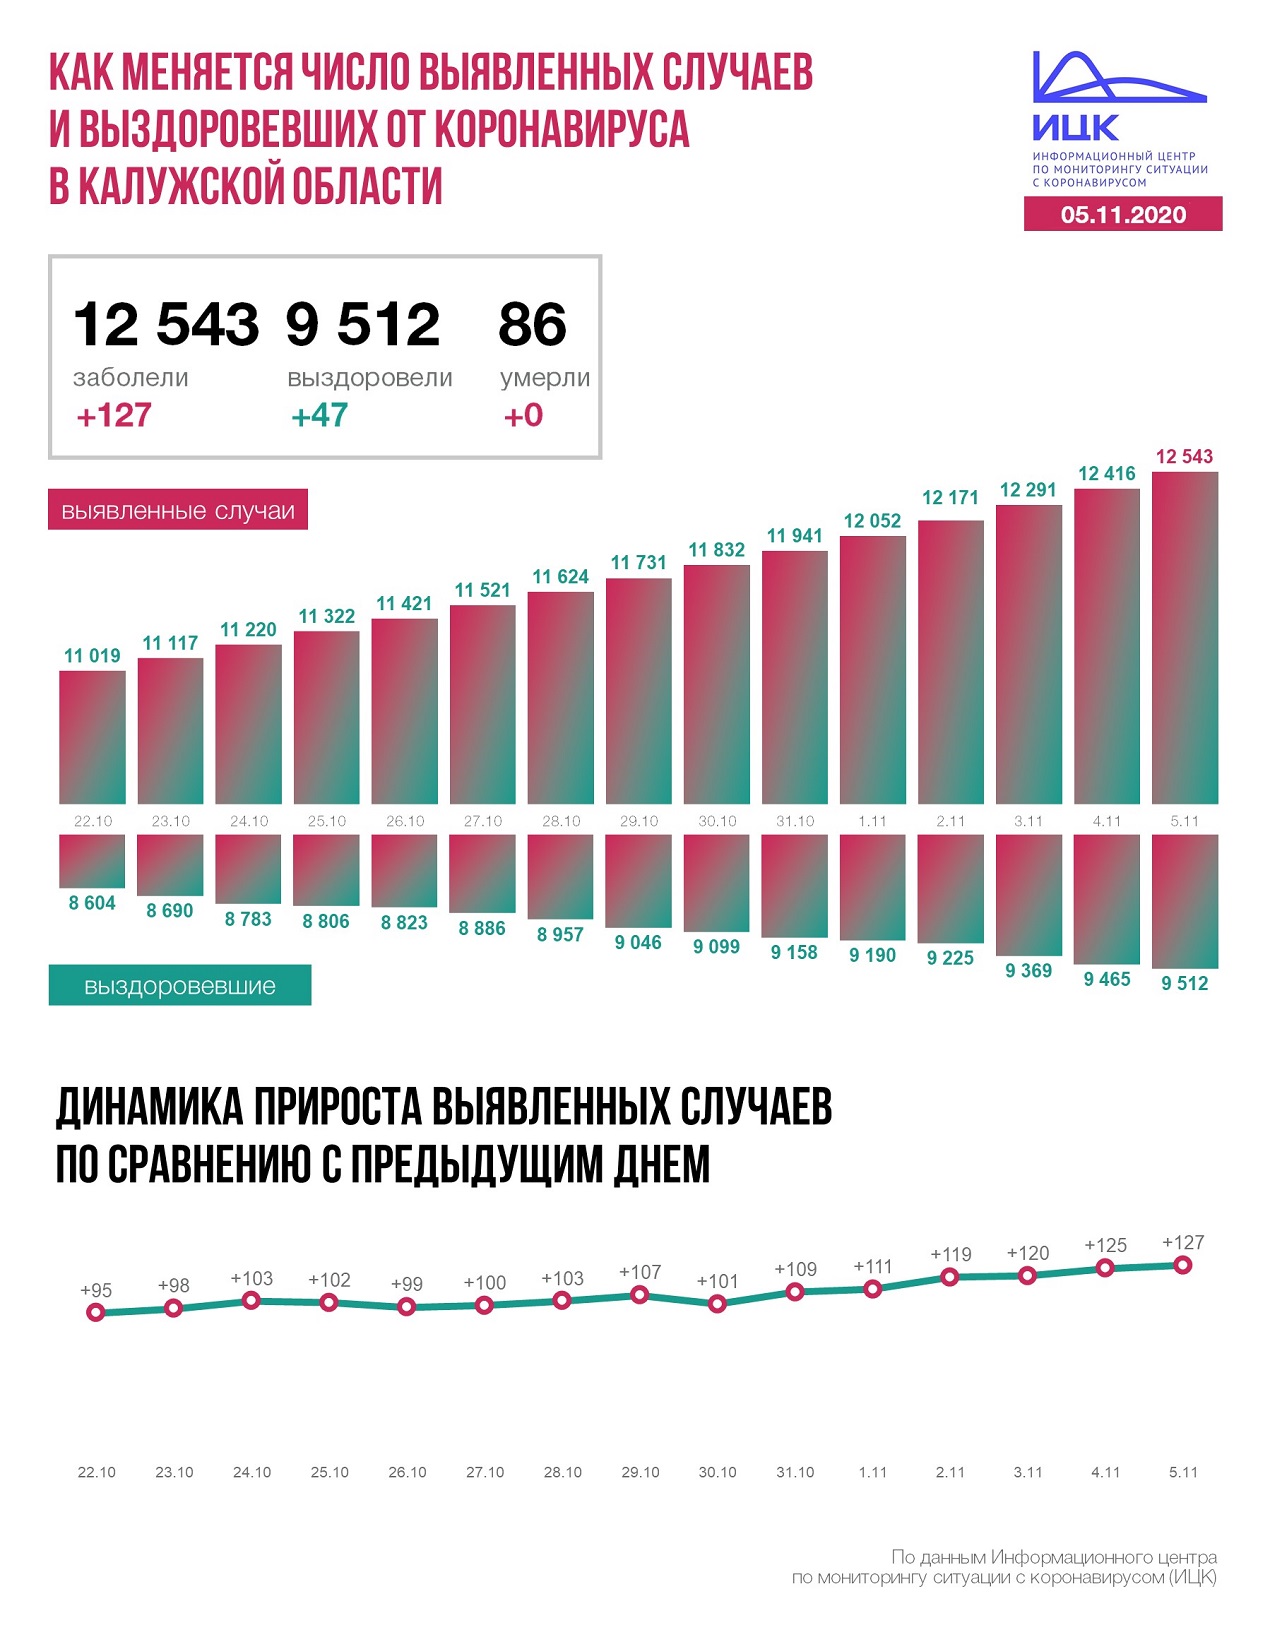  Официальные данные федерального оперативного штаба по коронавирусу в Калужской области на 5 ноября 2020 года.